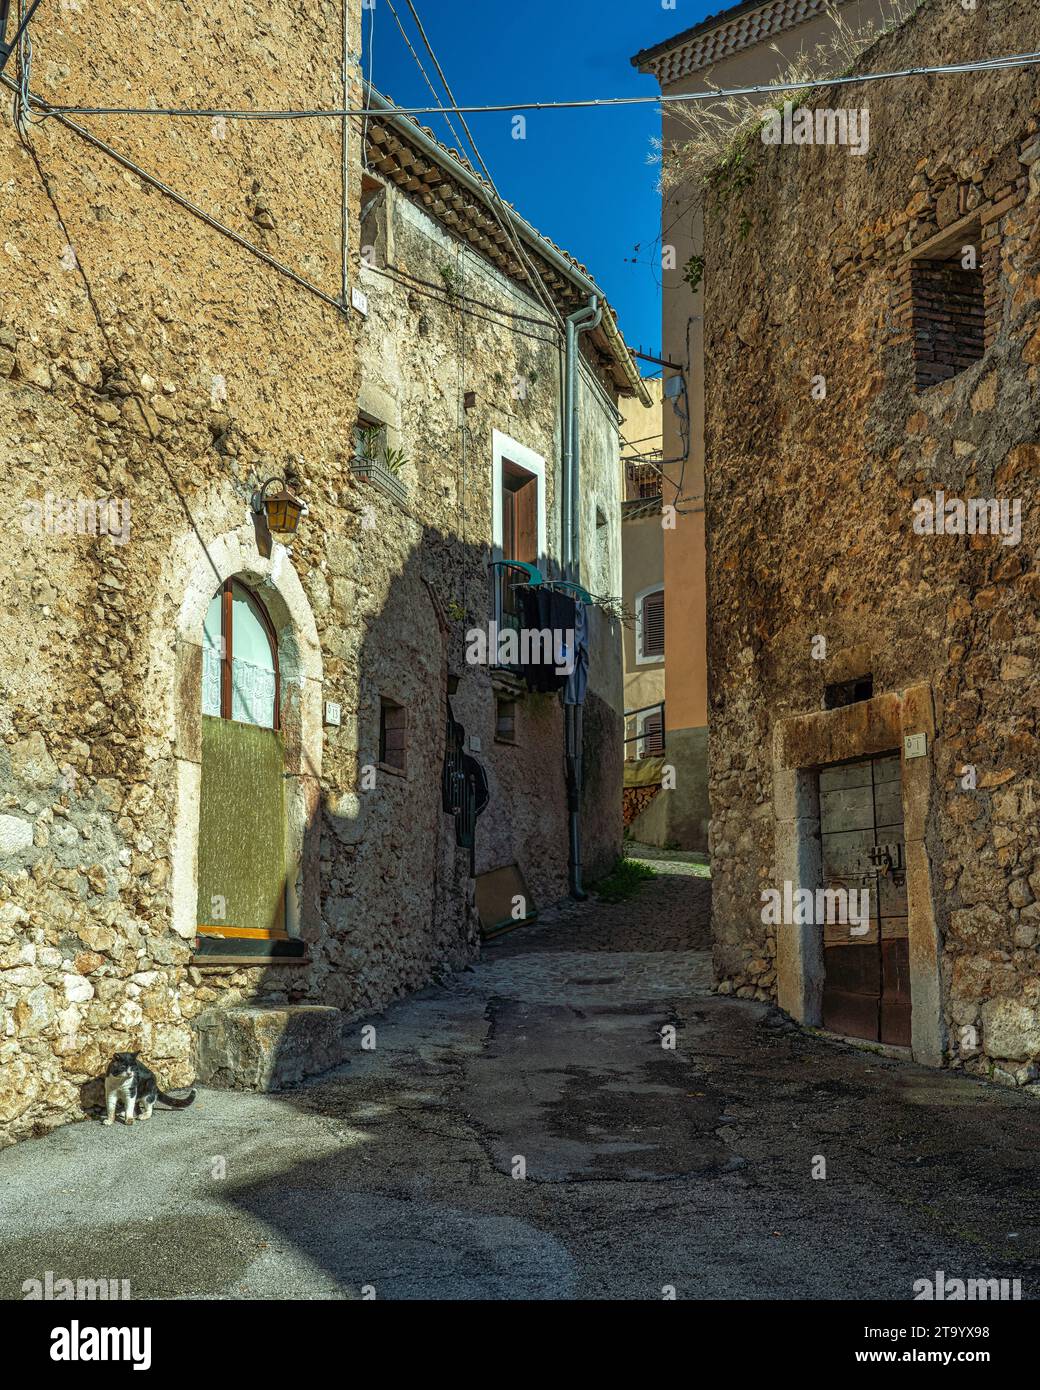 Scorci del centro storico della città montana di Cansano. Vecchie case in pietra. Cansano, provincia dell'Aquila, Abruzzo, Italia, Foto Stock